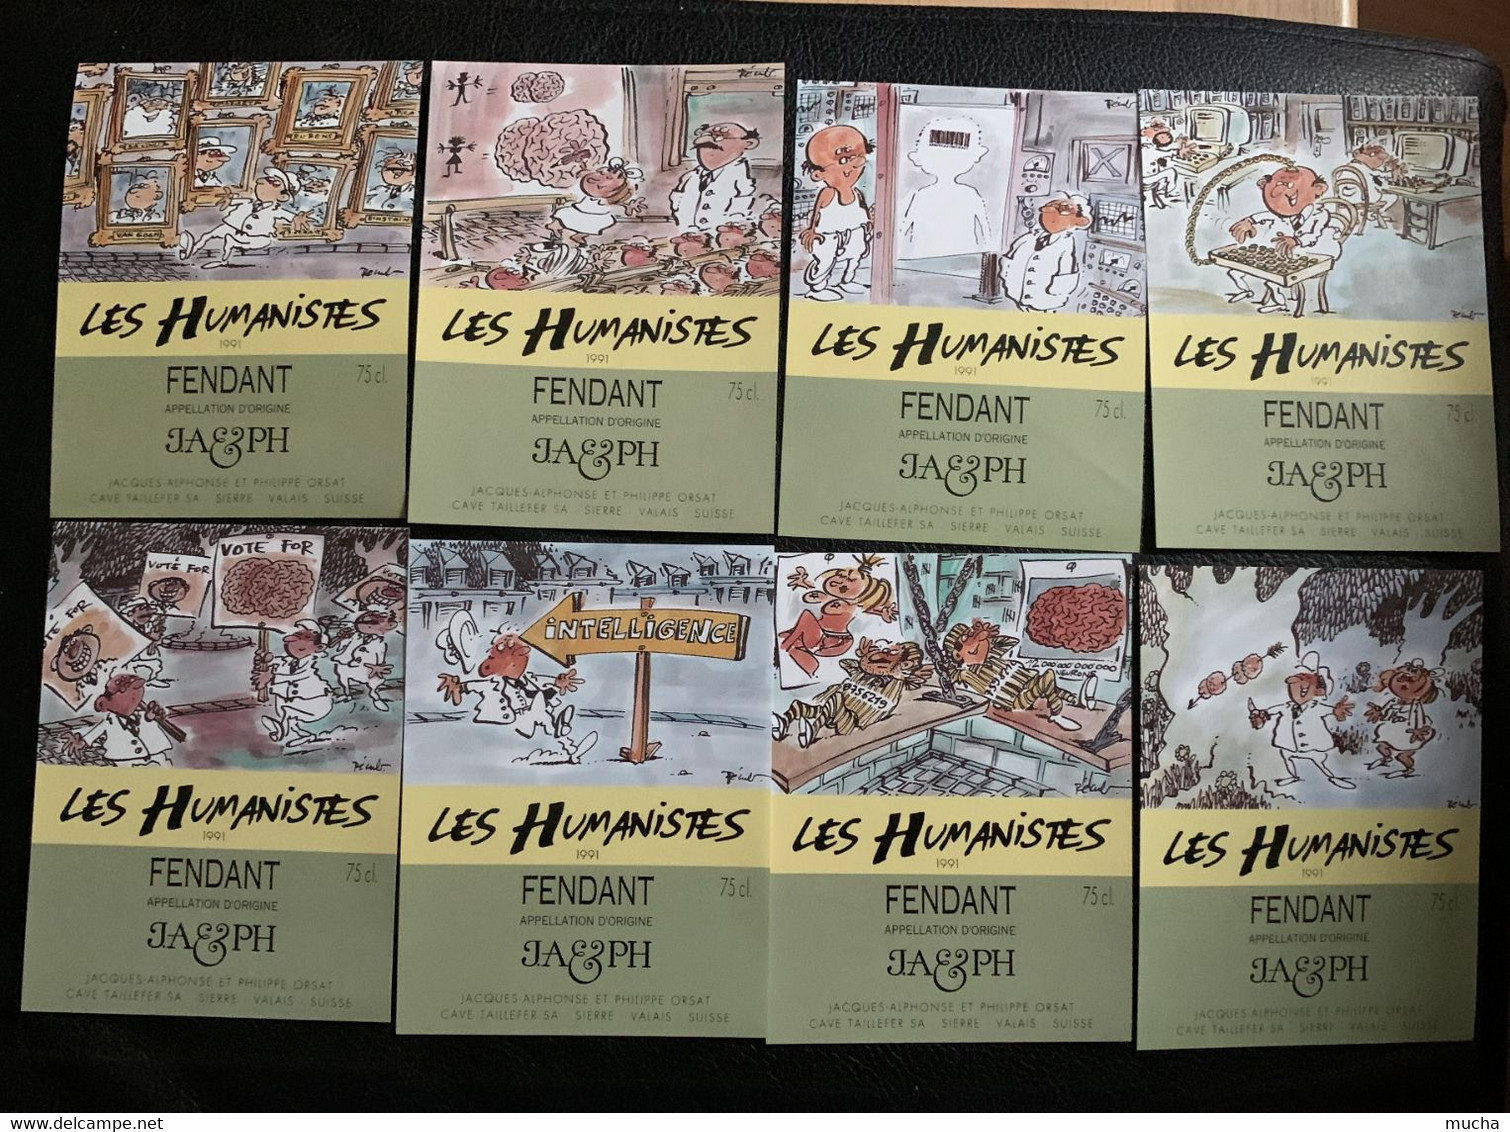 19816  - Série Les Humanistes 1991 24 étiquettes Dessins De Pécub  Fendant JA & PH Orsat Cave Taillefer Sierre - Humour